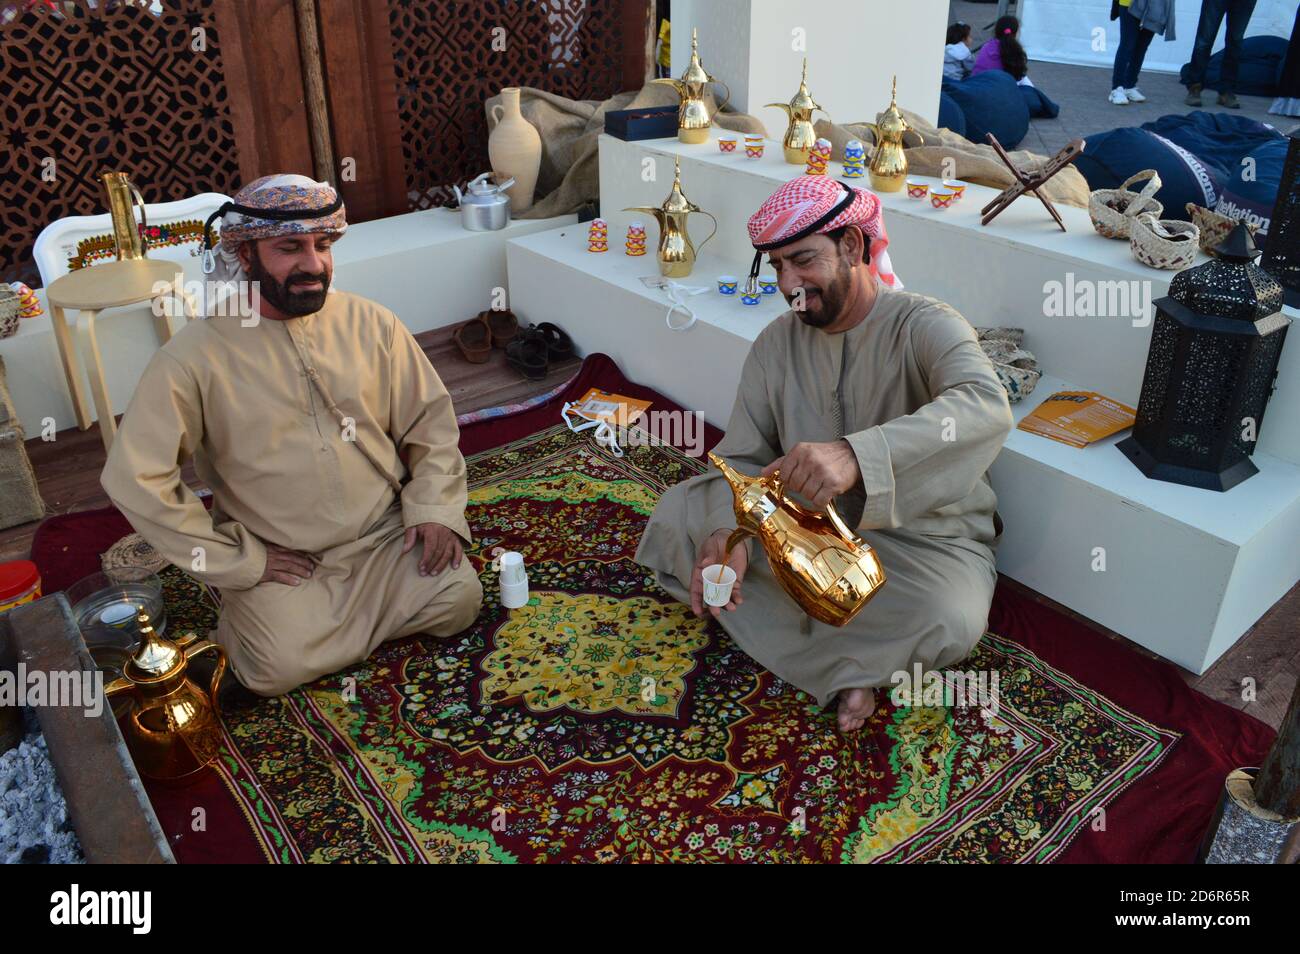 Abu Dhabi, VAE - 2019. Zwei arabische Männer, die traditionell angezogen waren, tranken Kaffee aus einer glänzenden Kaffeekocher und saßen auf dem farbenfrohen Teppich Stockfoto